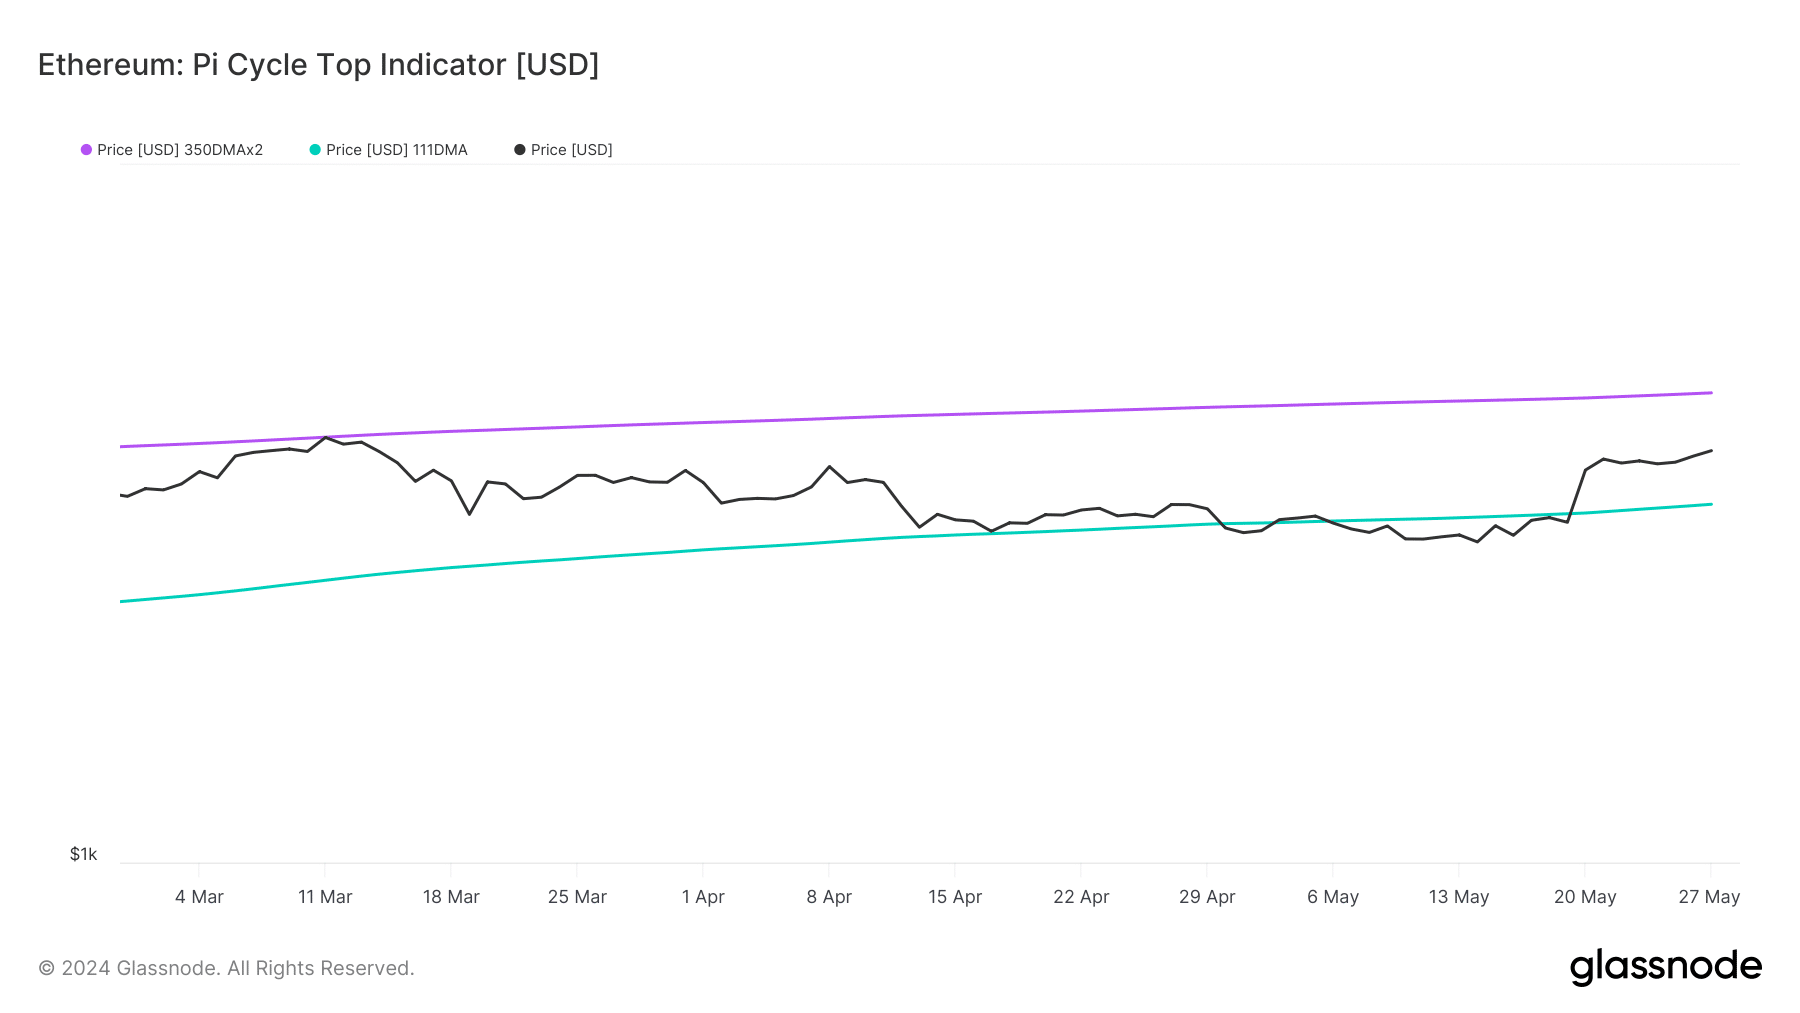 La cima del ciclo Ethereum pi muestra que el precio de ETH puede aumentar